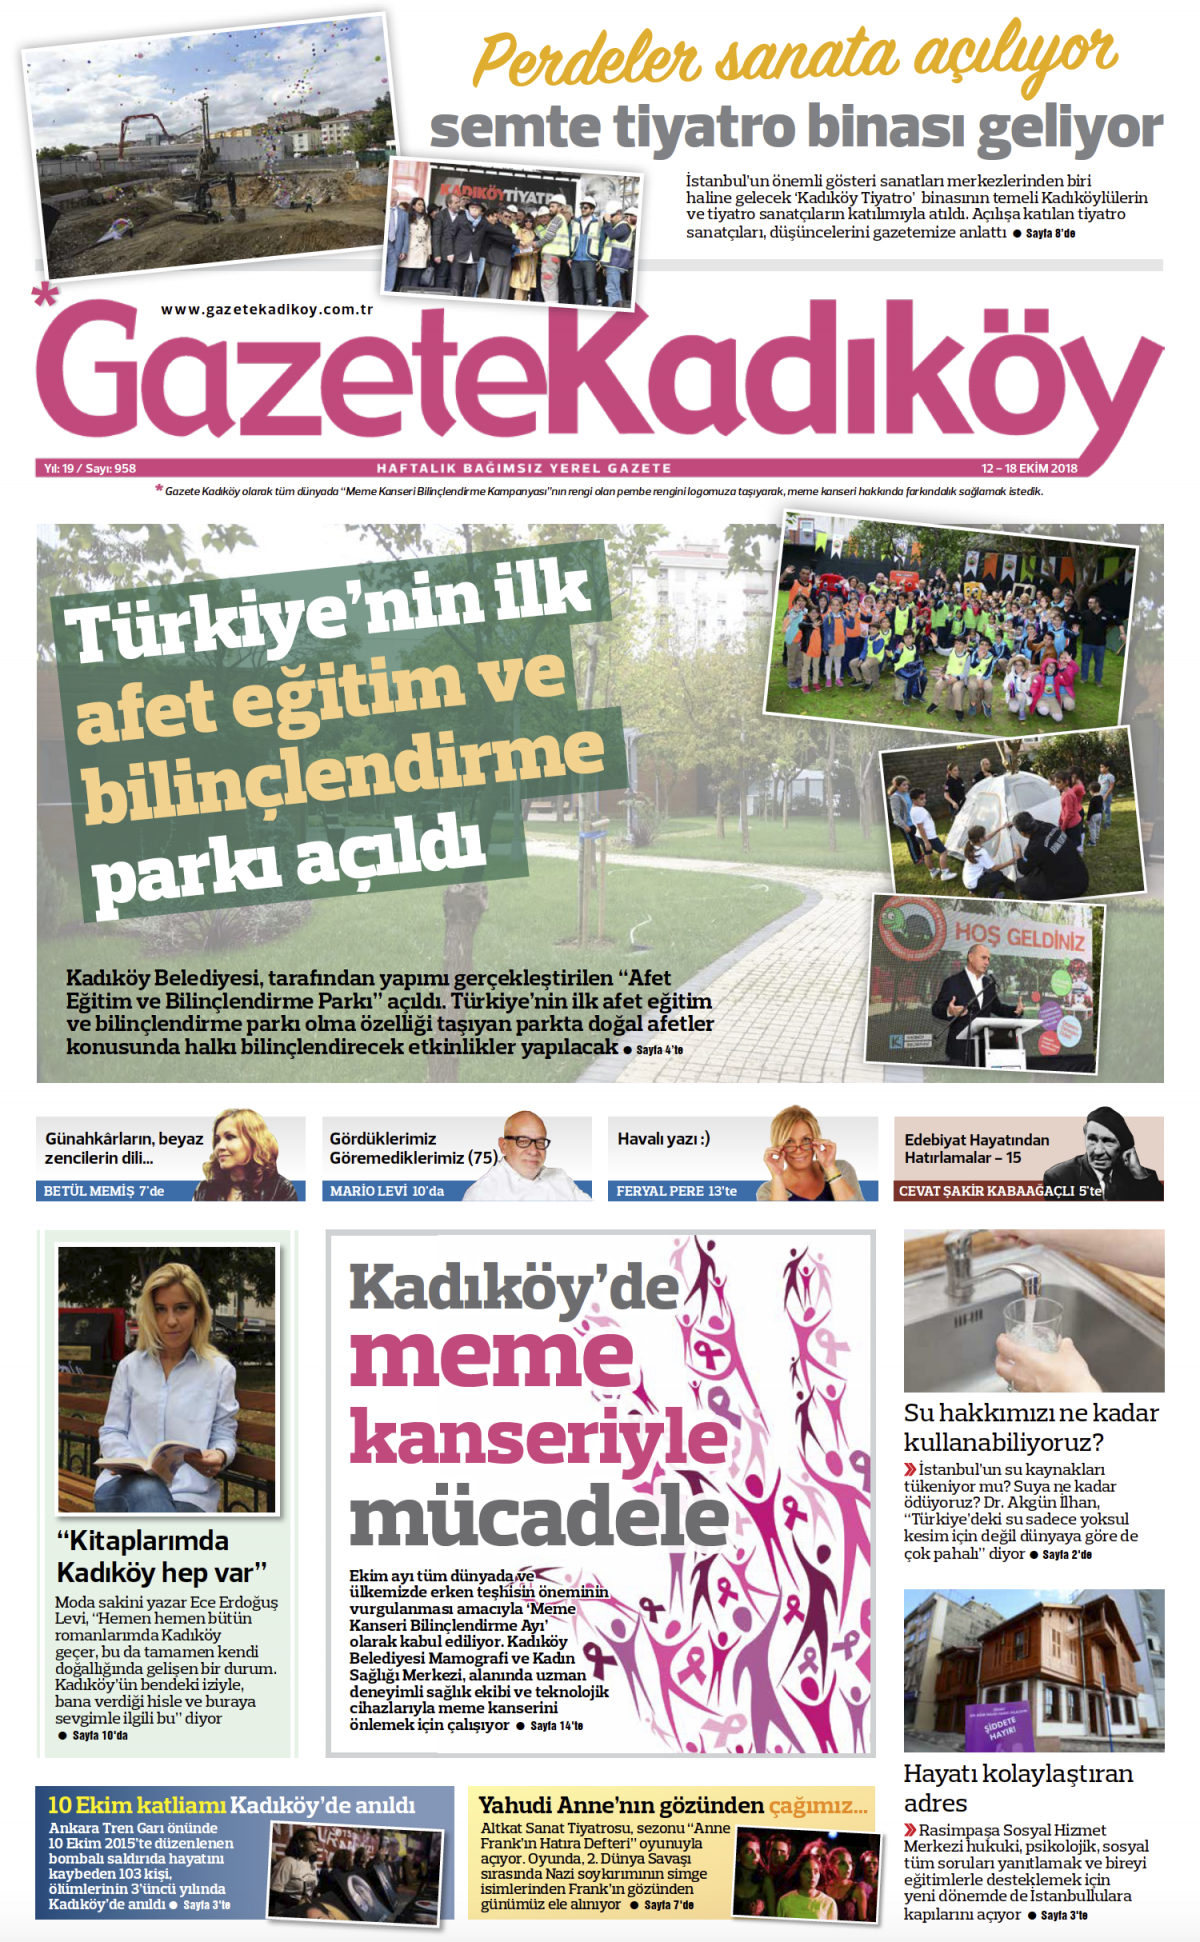 Gazete Kadıköy - 958. sayı